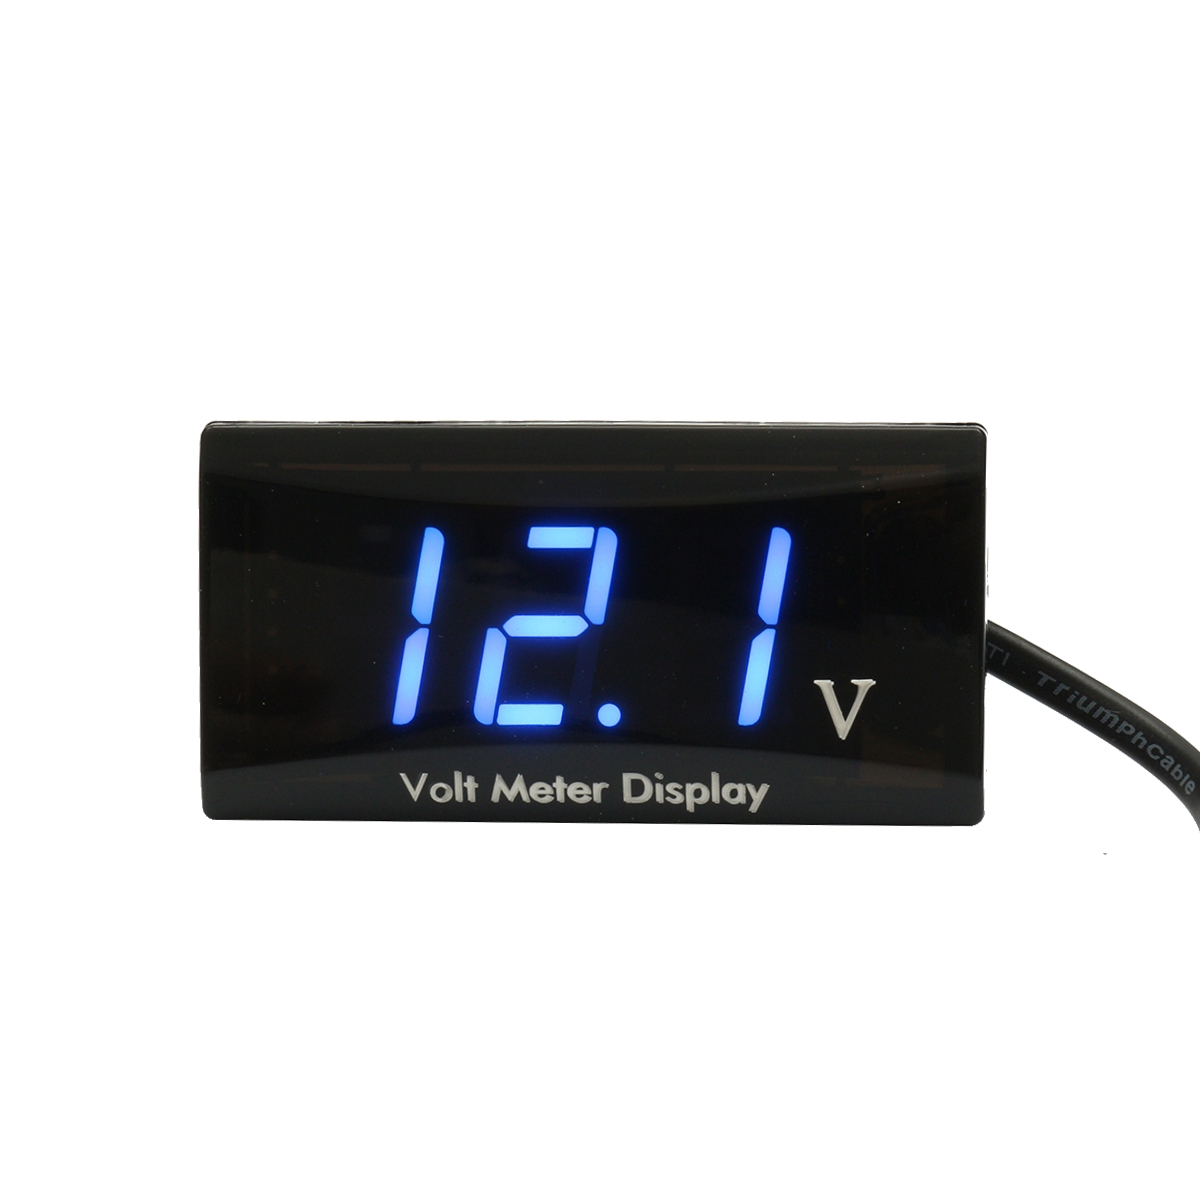 

12V Водонепроницаемы Измеритель напряжения панели LED Цифровой Дисплей Вольт Meterr Для Авто мотоцикл